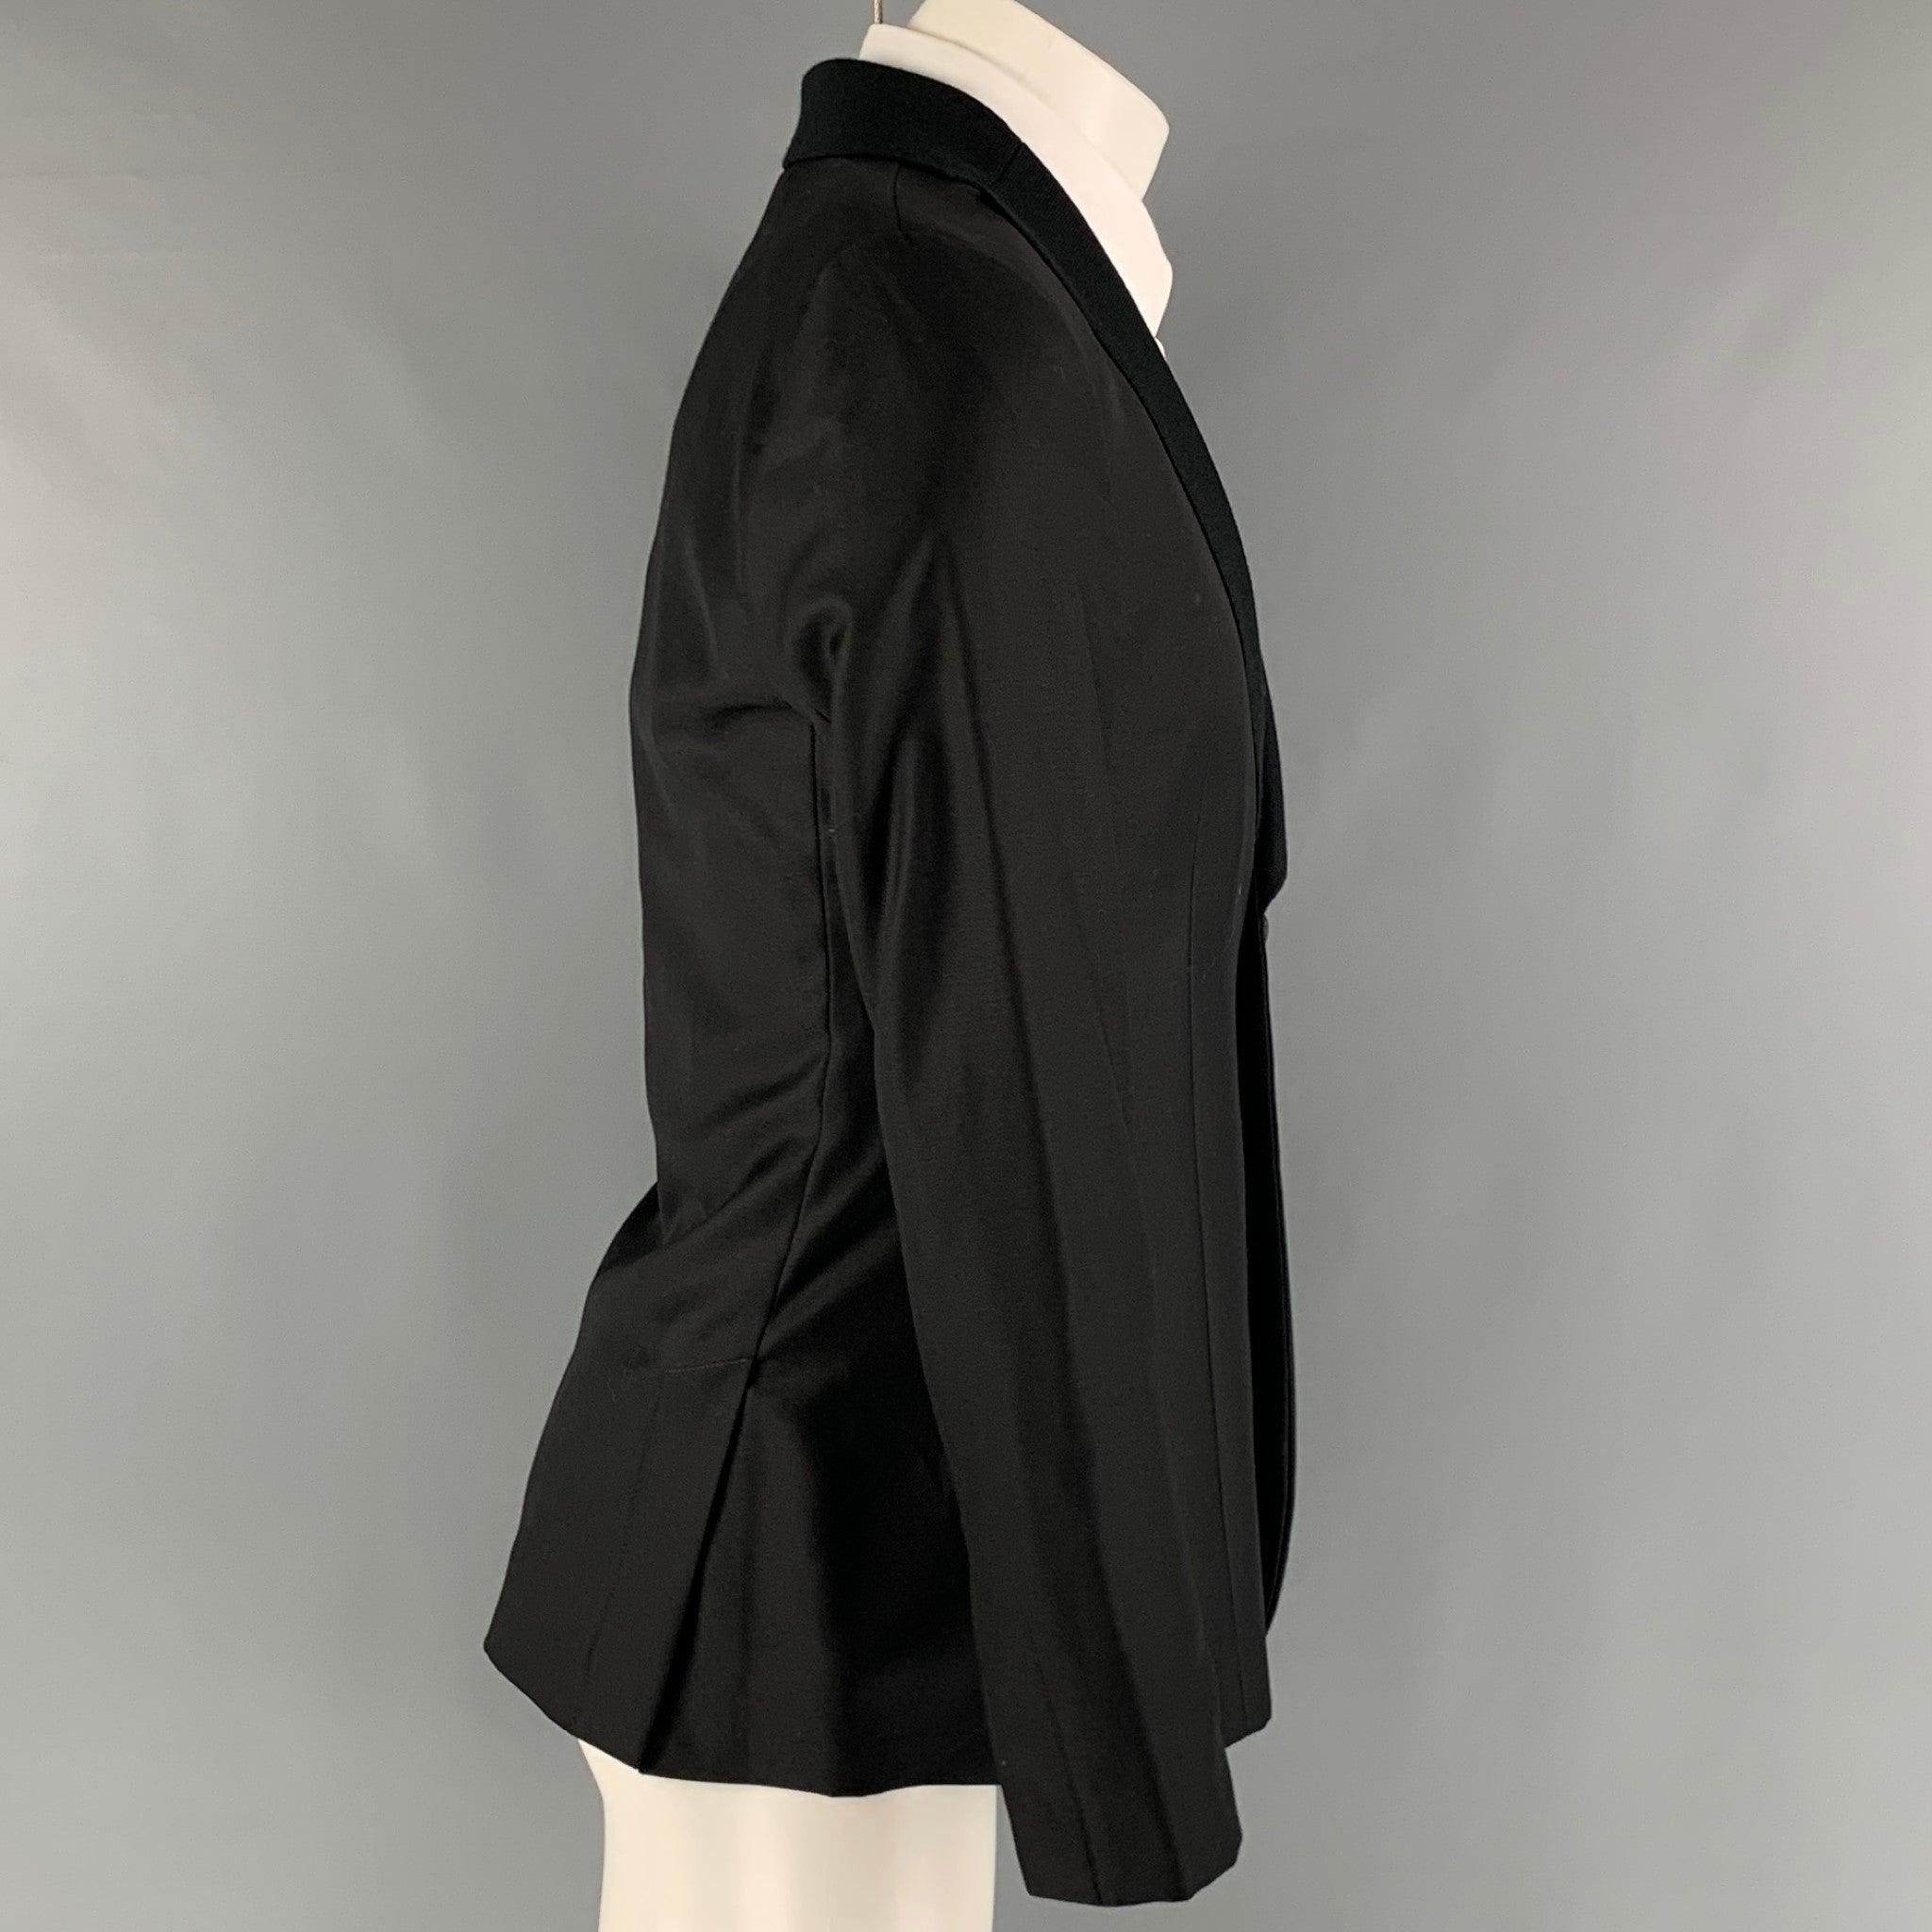 Le manteau sport 'MILANO' d'EMPORIO ARMANI est réalisé dans un tissu noir de laine et de soie avec une doublure complète. Il présente un revers à cran, des poches latérales et se ferme par un seul bouton. Fabriquées en Italie. Excellent état